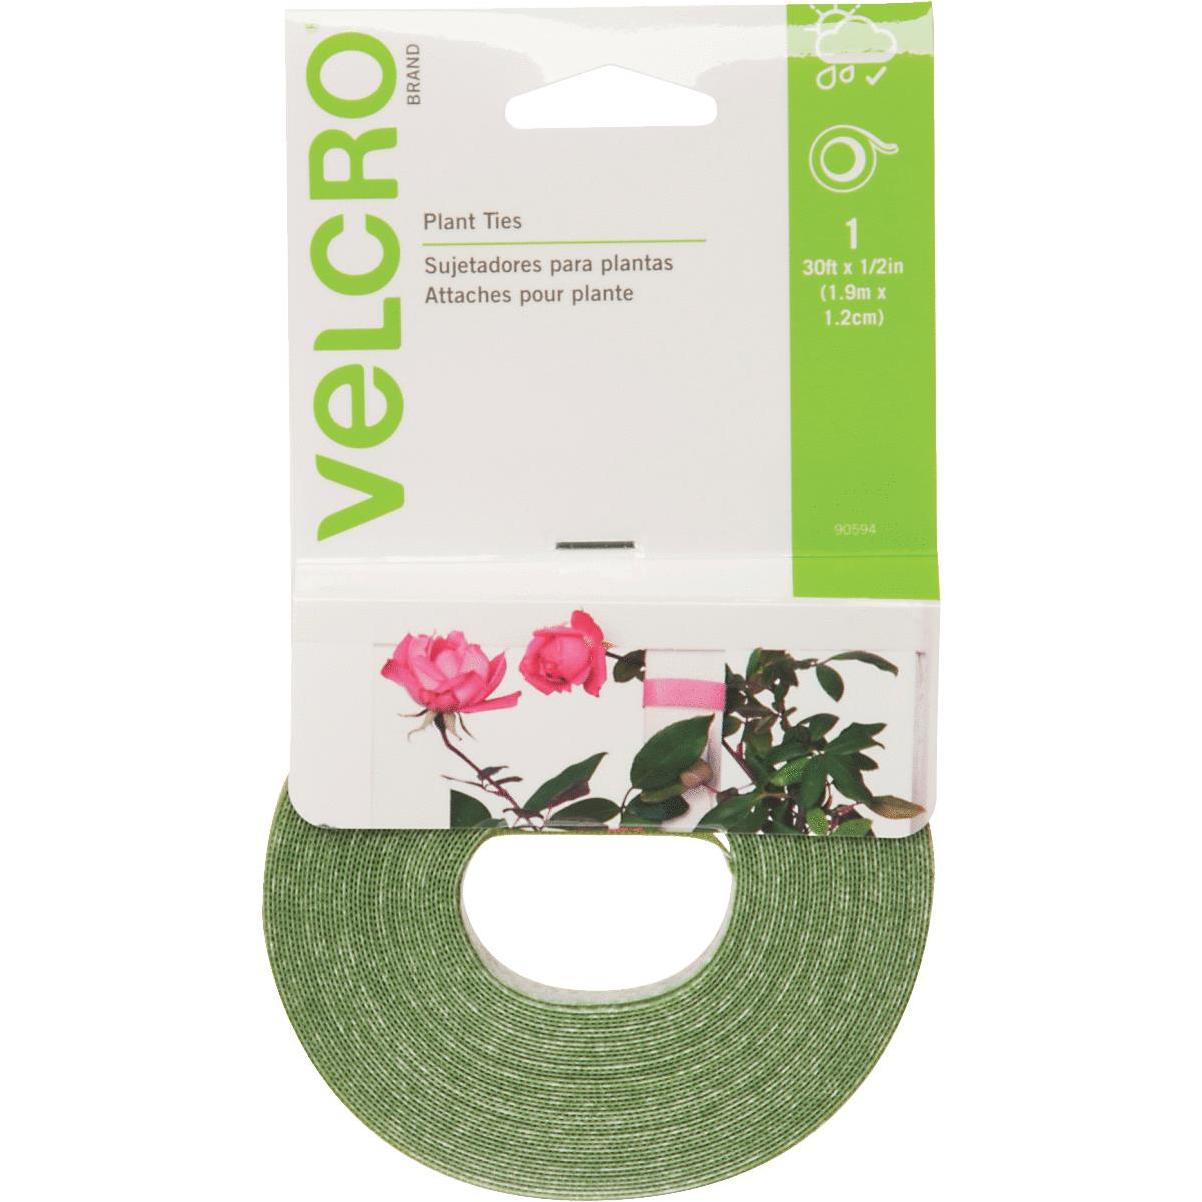 VELCRO Brand One-Wrap 50 Ft. x 1/2 In. Green Garden Ties